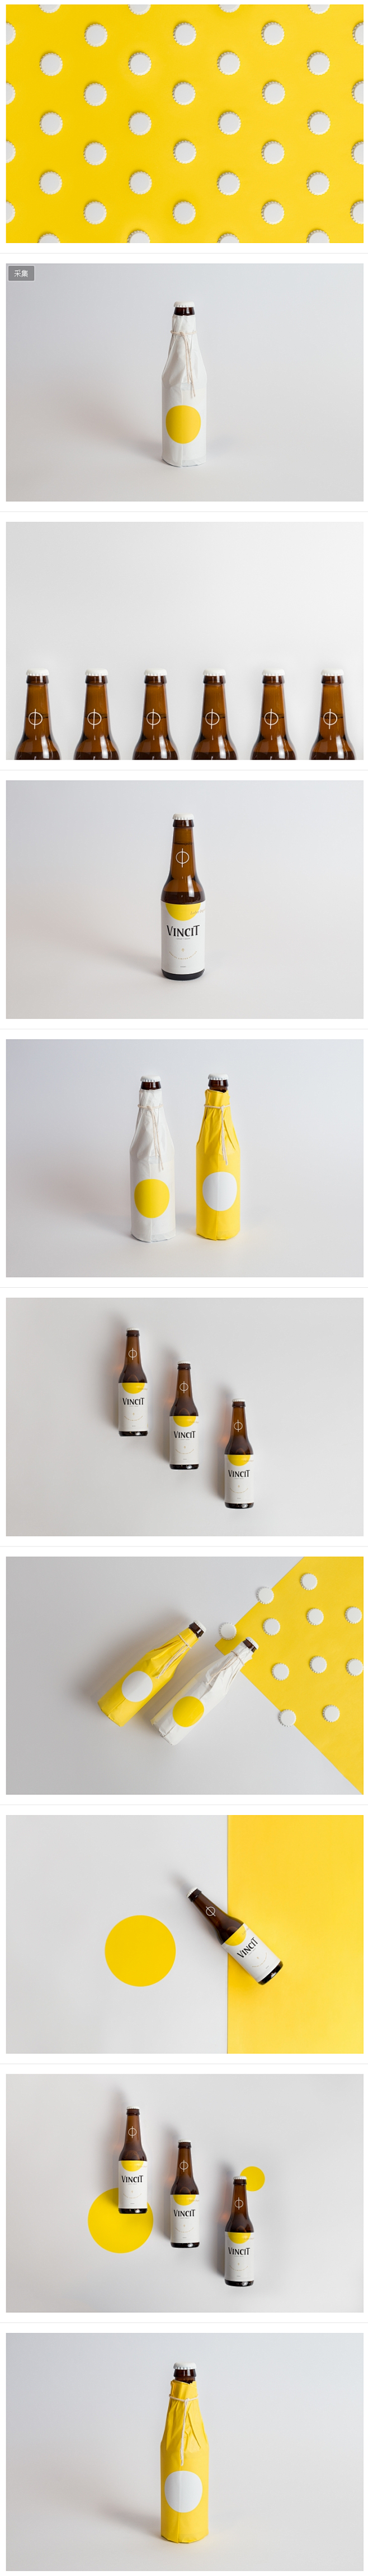 Vincit 特别限量版啤酒包装设计 |...